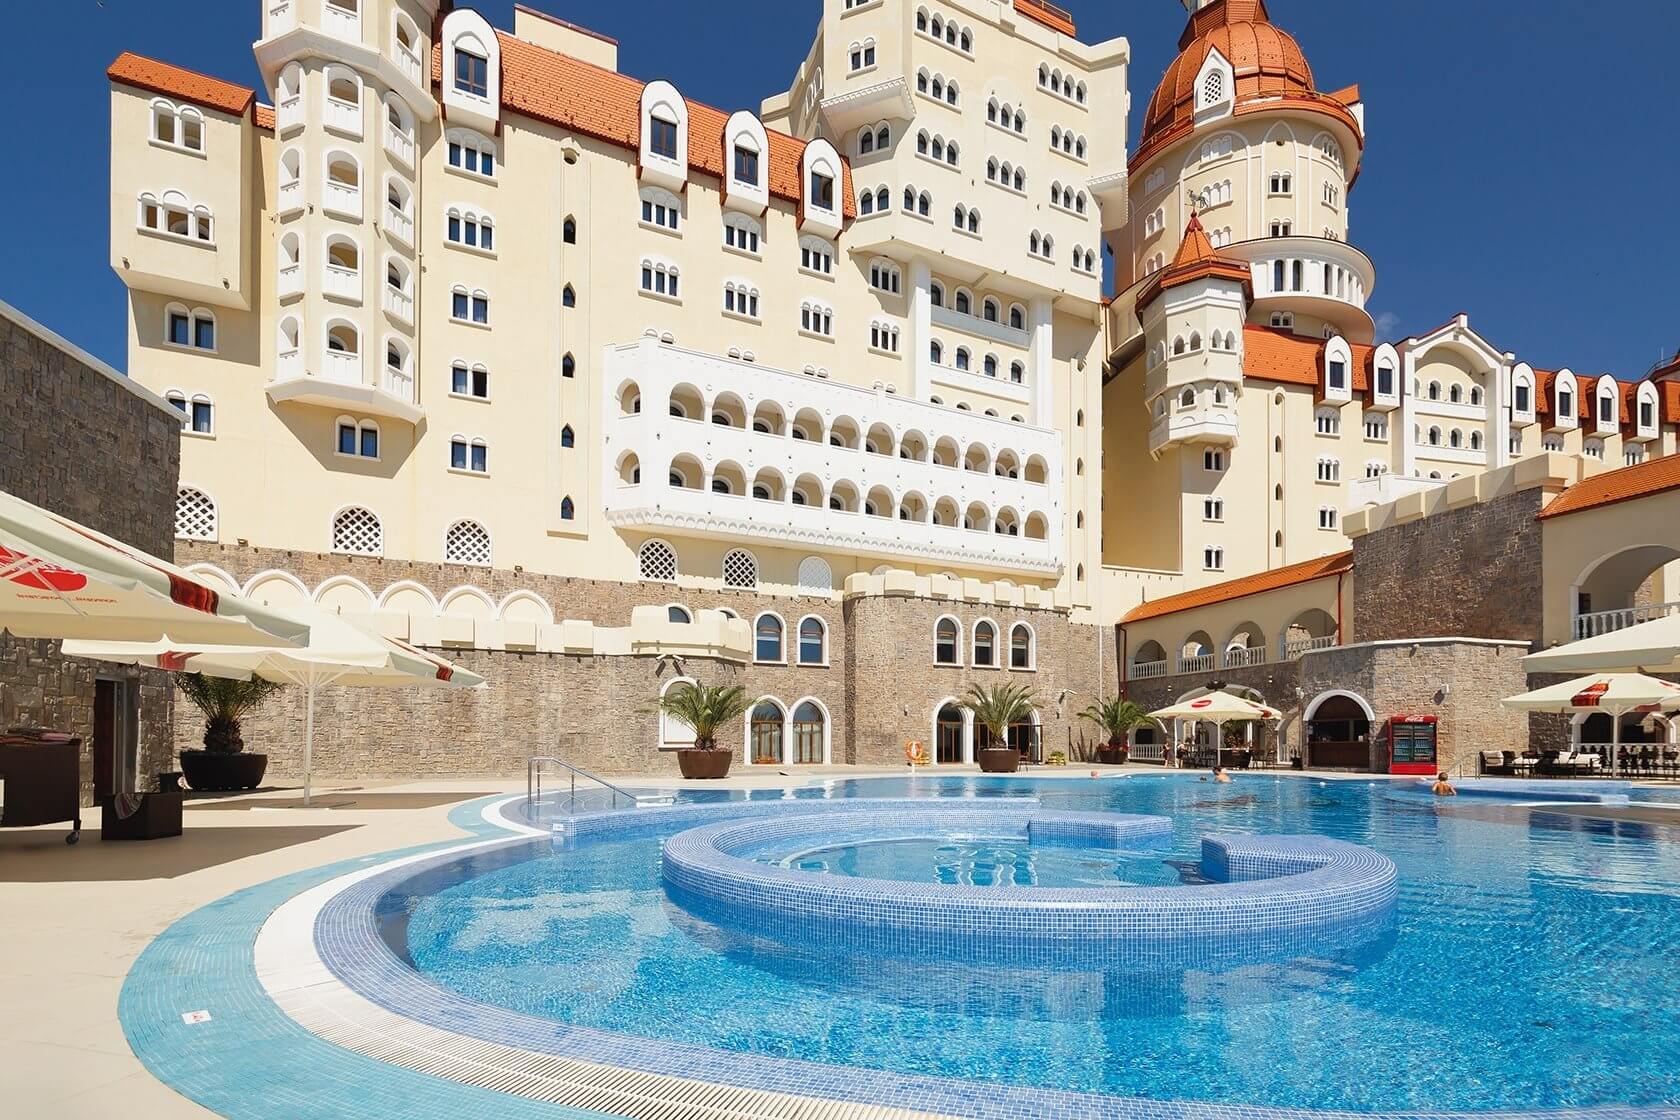 Огромный "отель-замок" - известная достопримечательность Сочи.